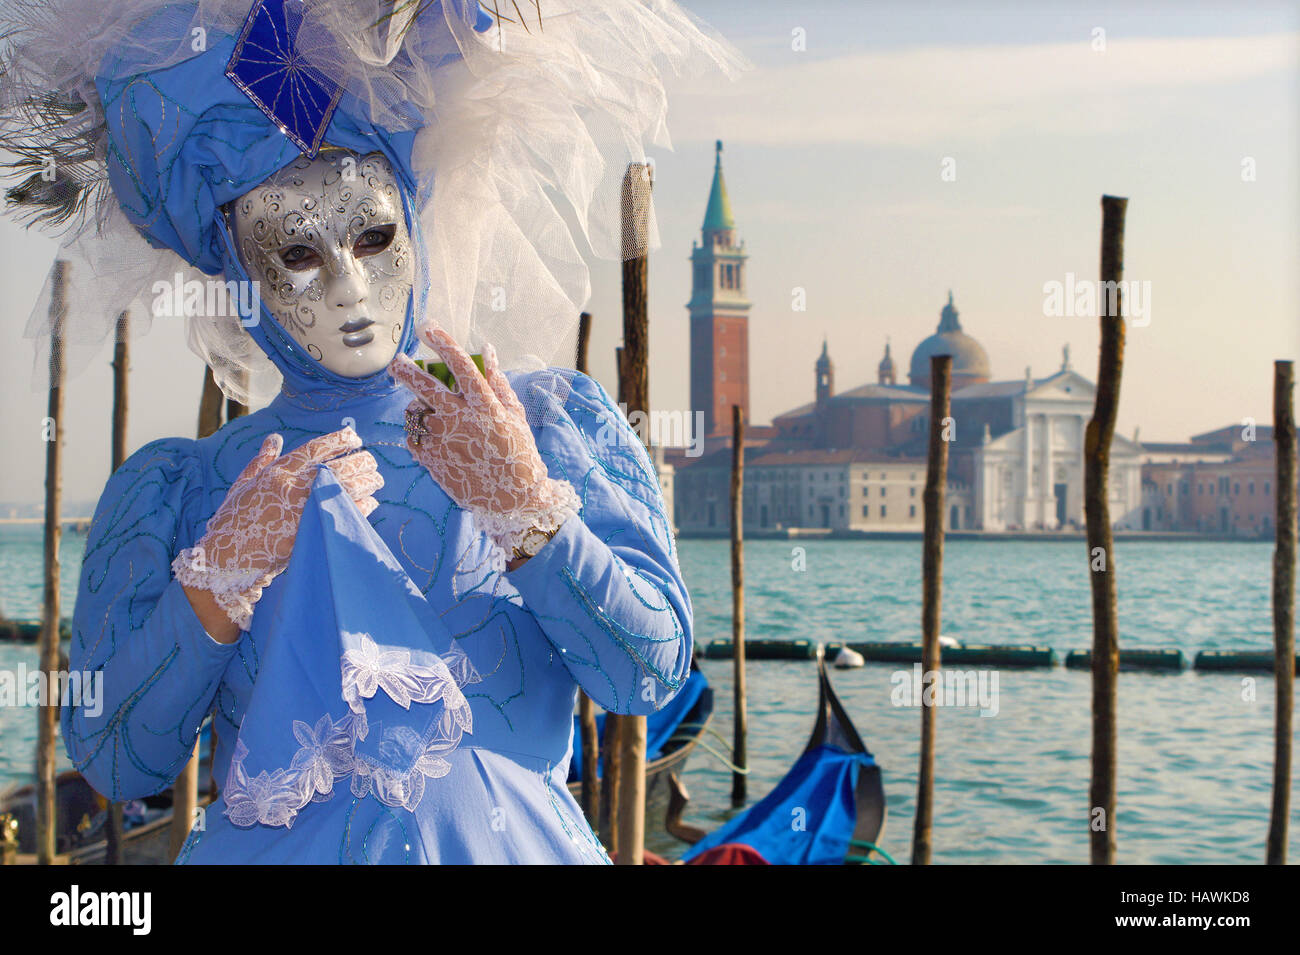 Venise, Italie - février 26, 2011 : Le masque bleu de carnaval et l'église San Giorgio Maggiore en arrière-plan. Banque D'Images